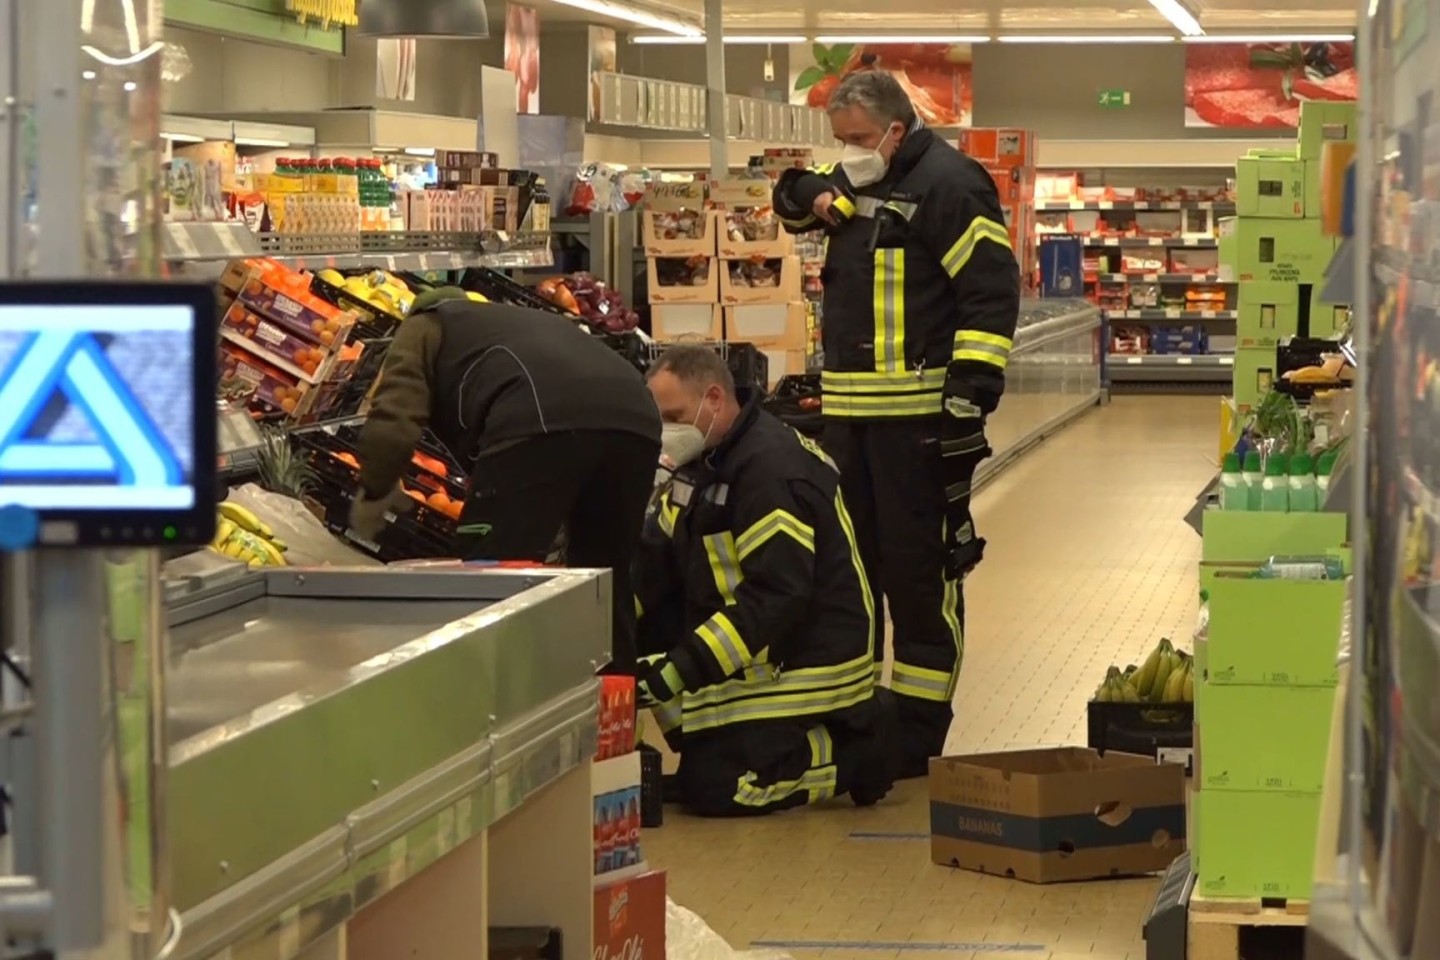 Einsatzkräfte der Polizei, Feuerwehr und ein Spinnenexperte suchen in den Obst- und Gemüseregalen des Supermarktes nach dem Tier.